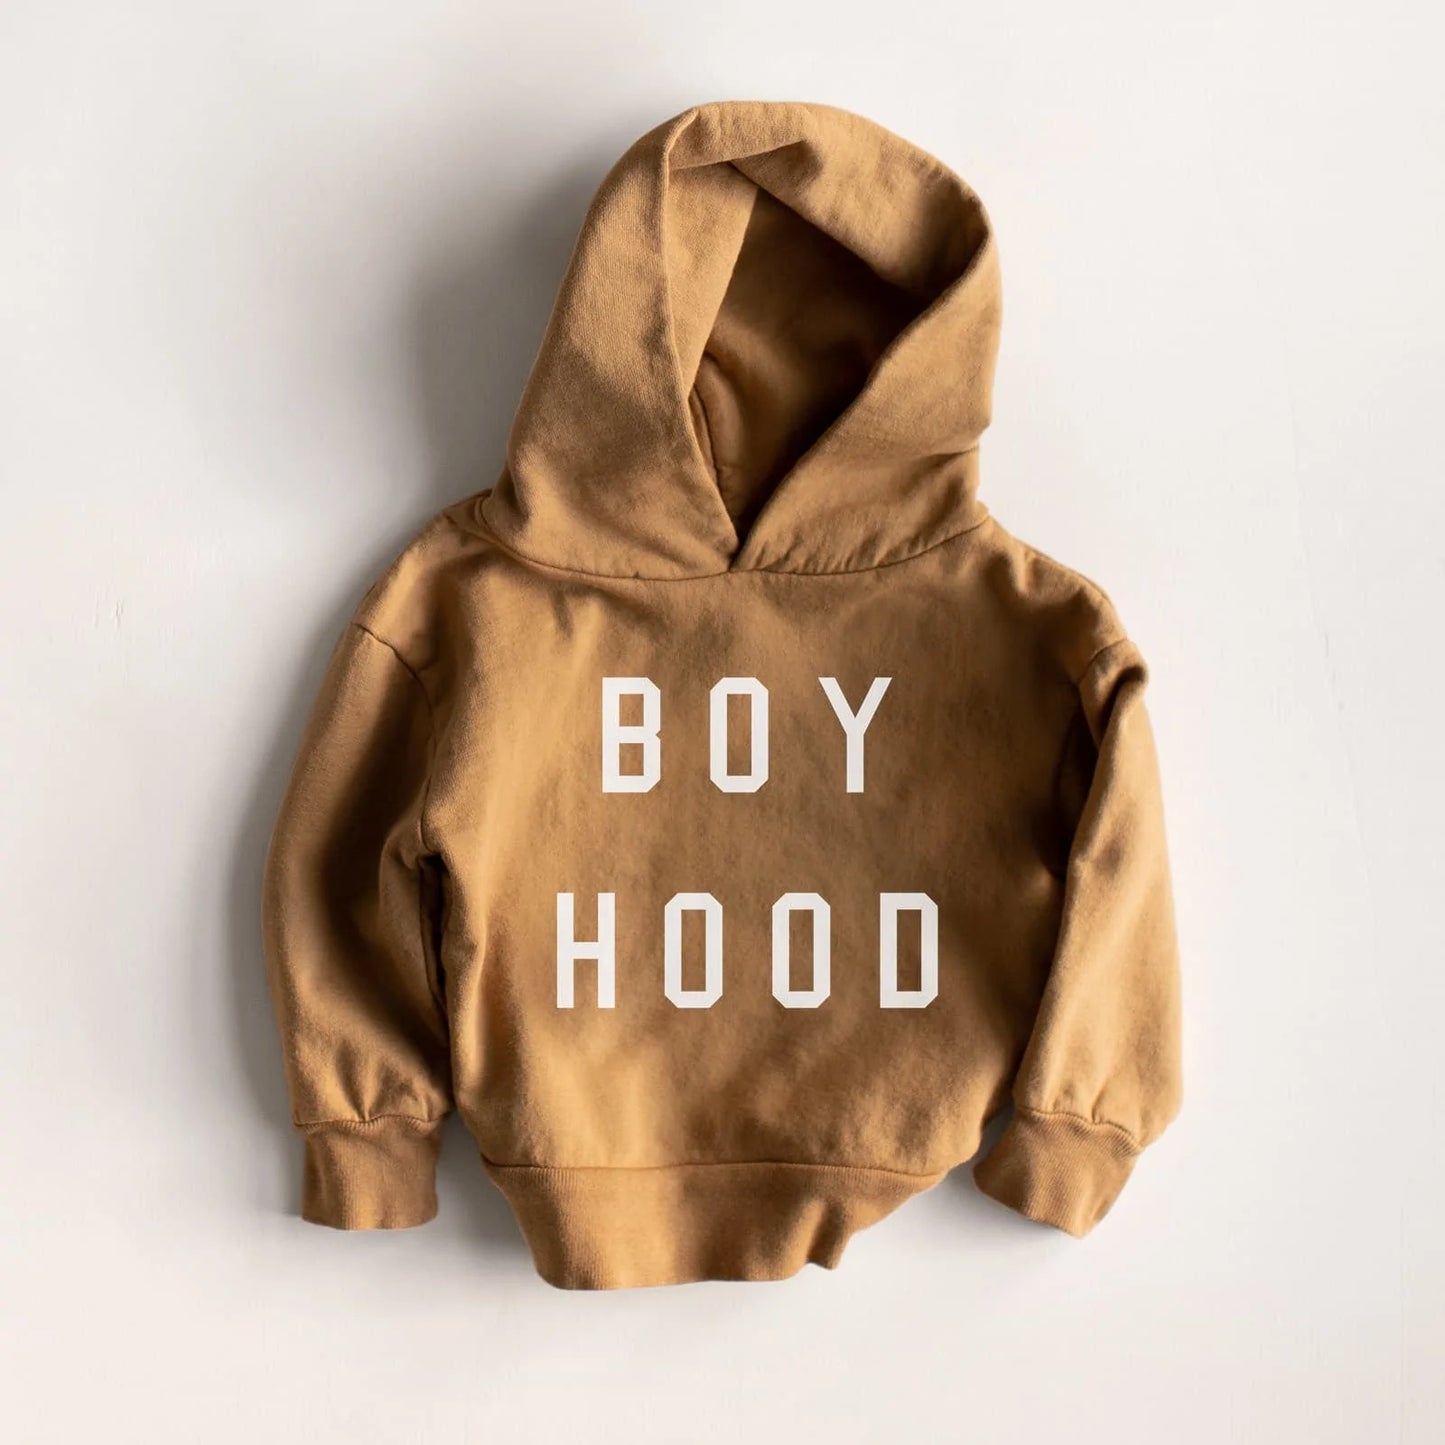 "Boyhood" Hoody Sweatshirt